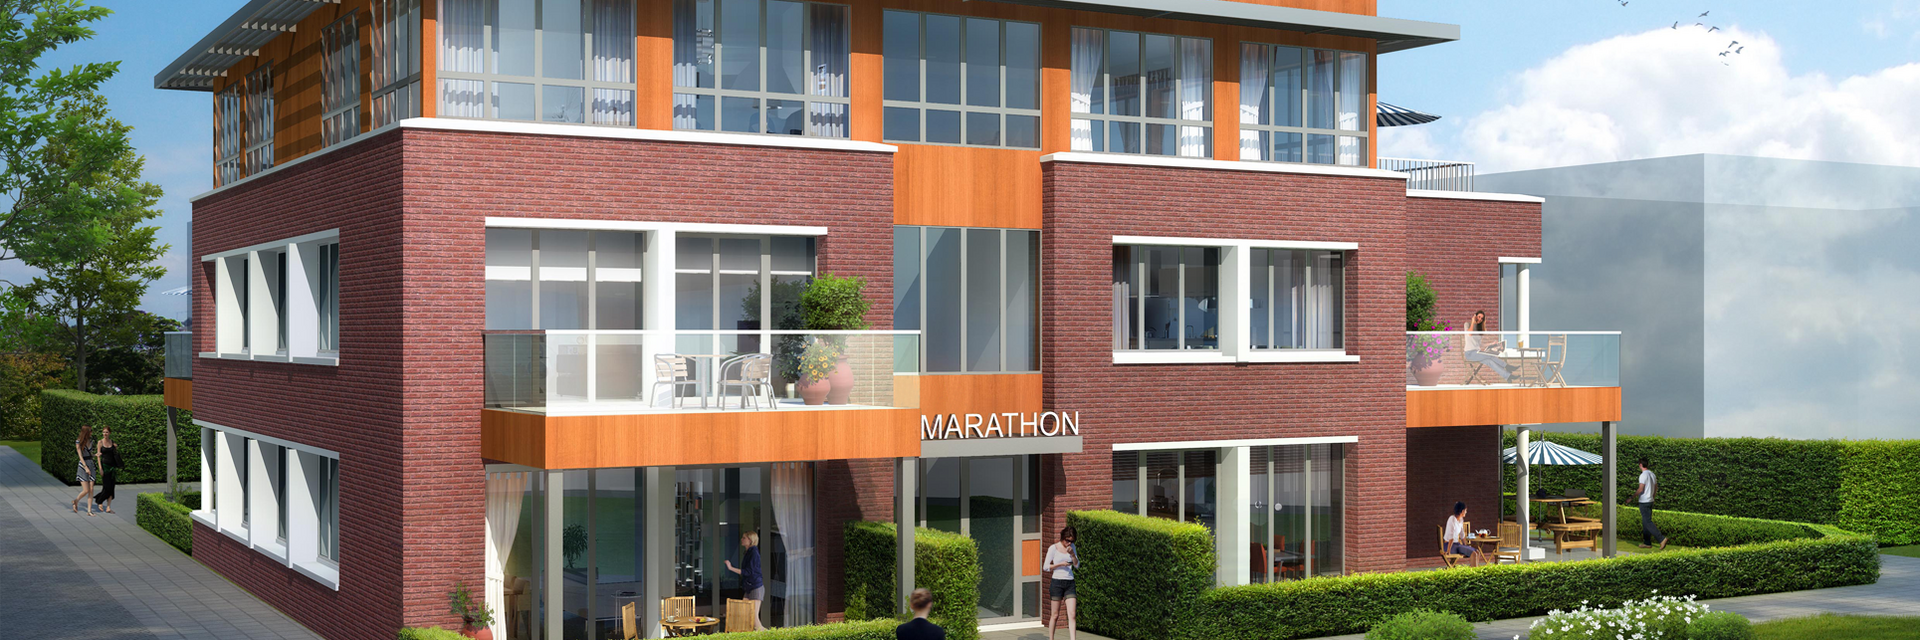 Marathon 9, Krimpen a/d Ijssel